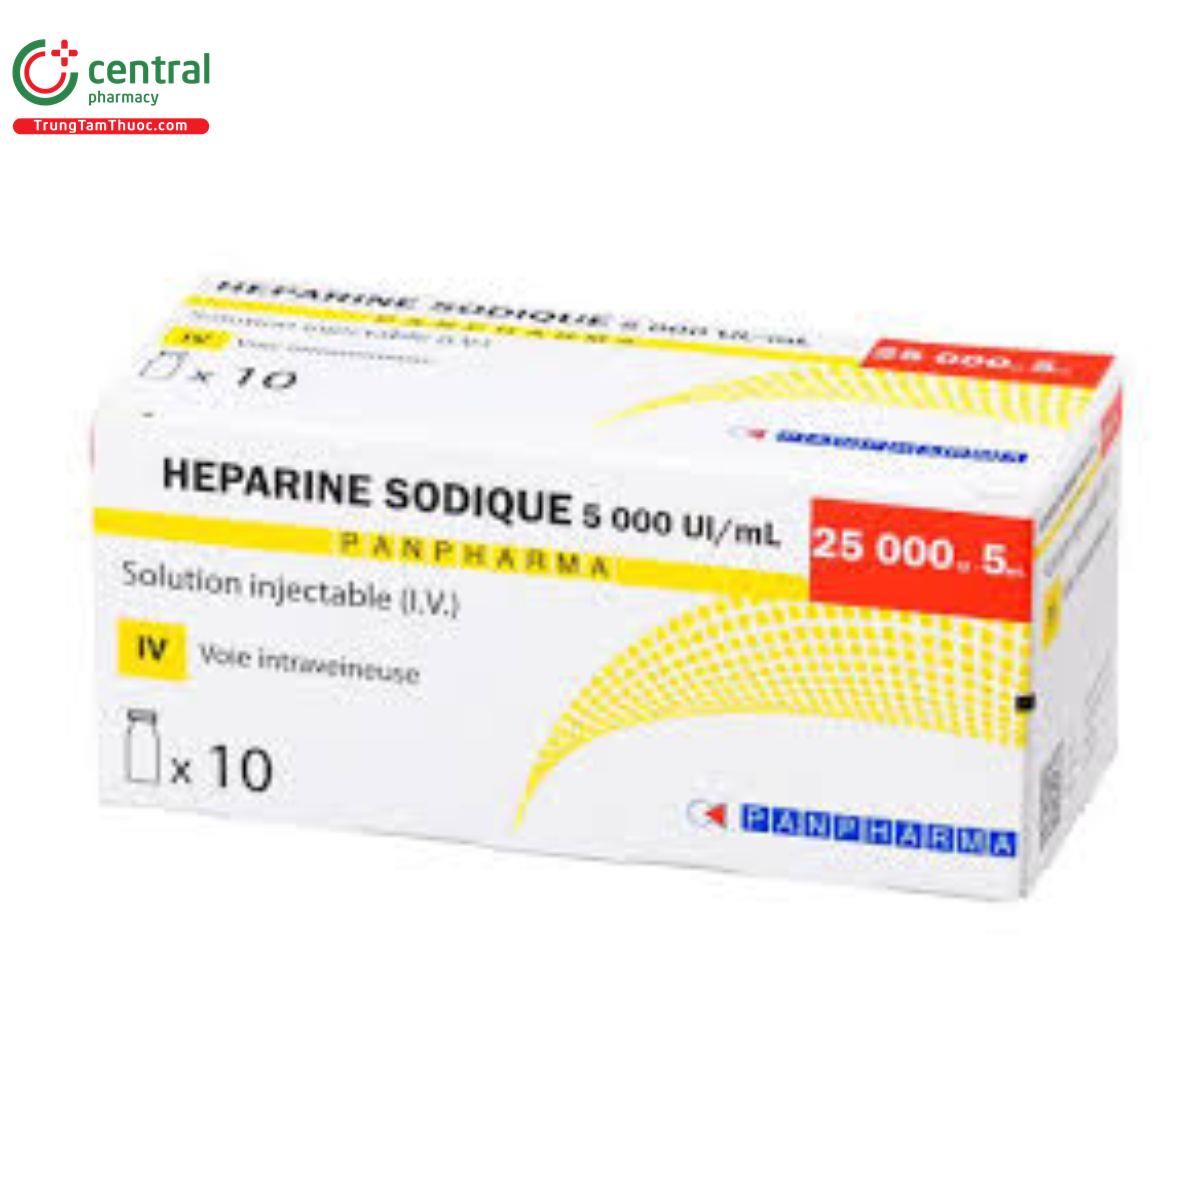 heparine sodique 5000uiml panpharma 3 P6864